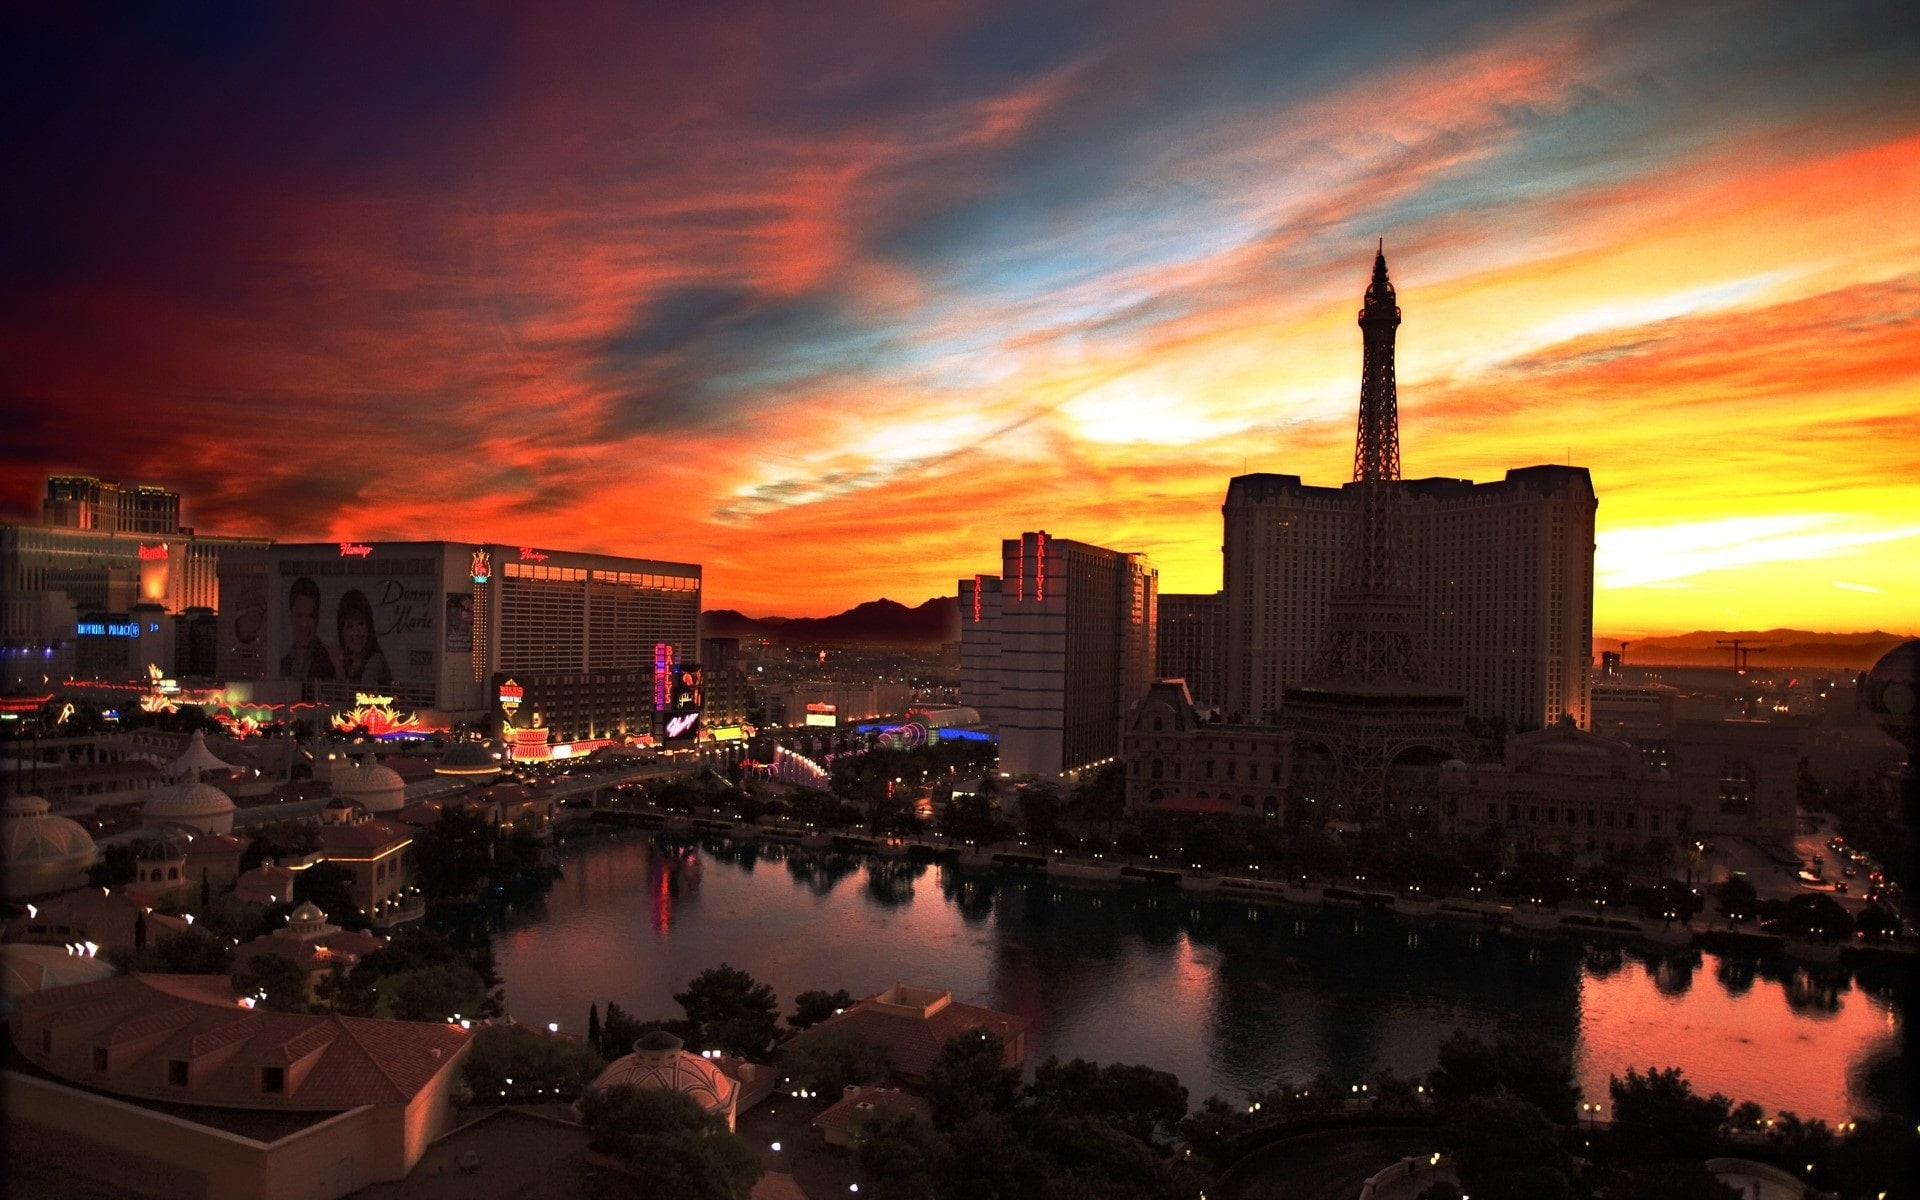 City night view, Las Vegas, casino, buildings, lights, sunset, red sky